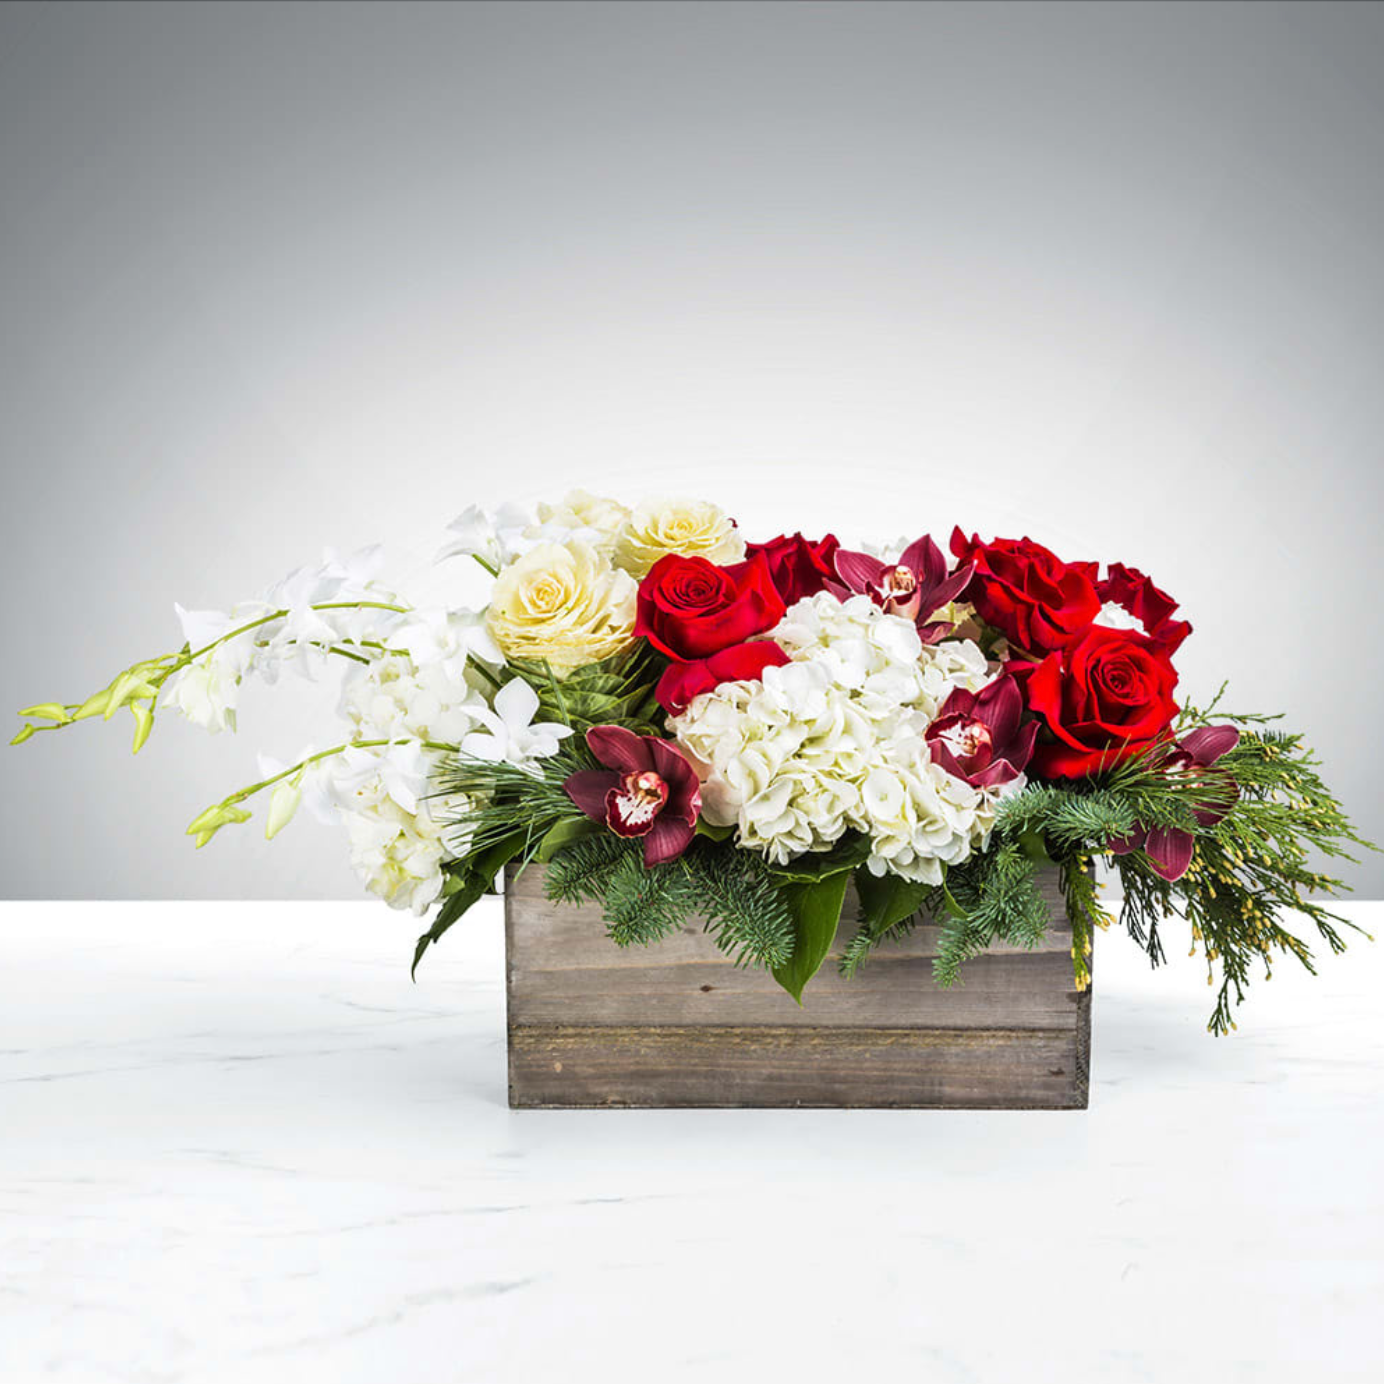 Snowman’s Scarf - DGM Flowers  | Fort Lauderdale Florist